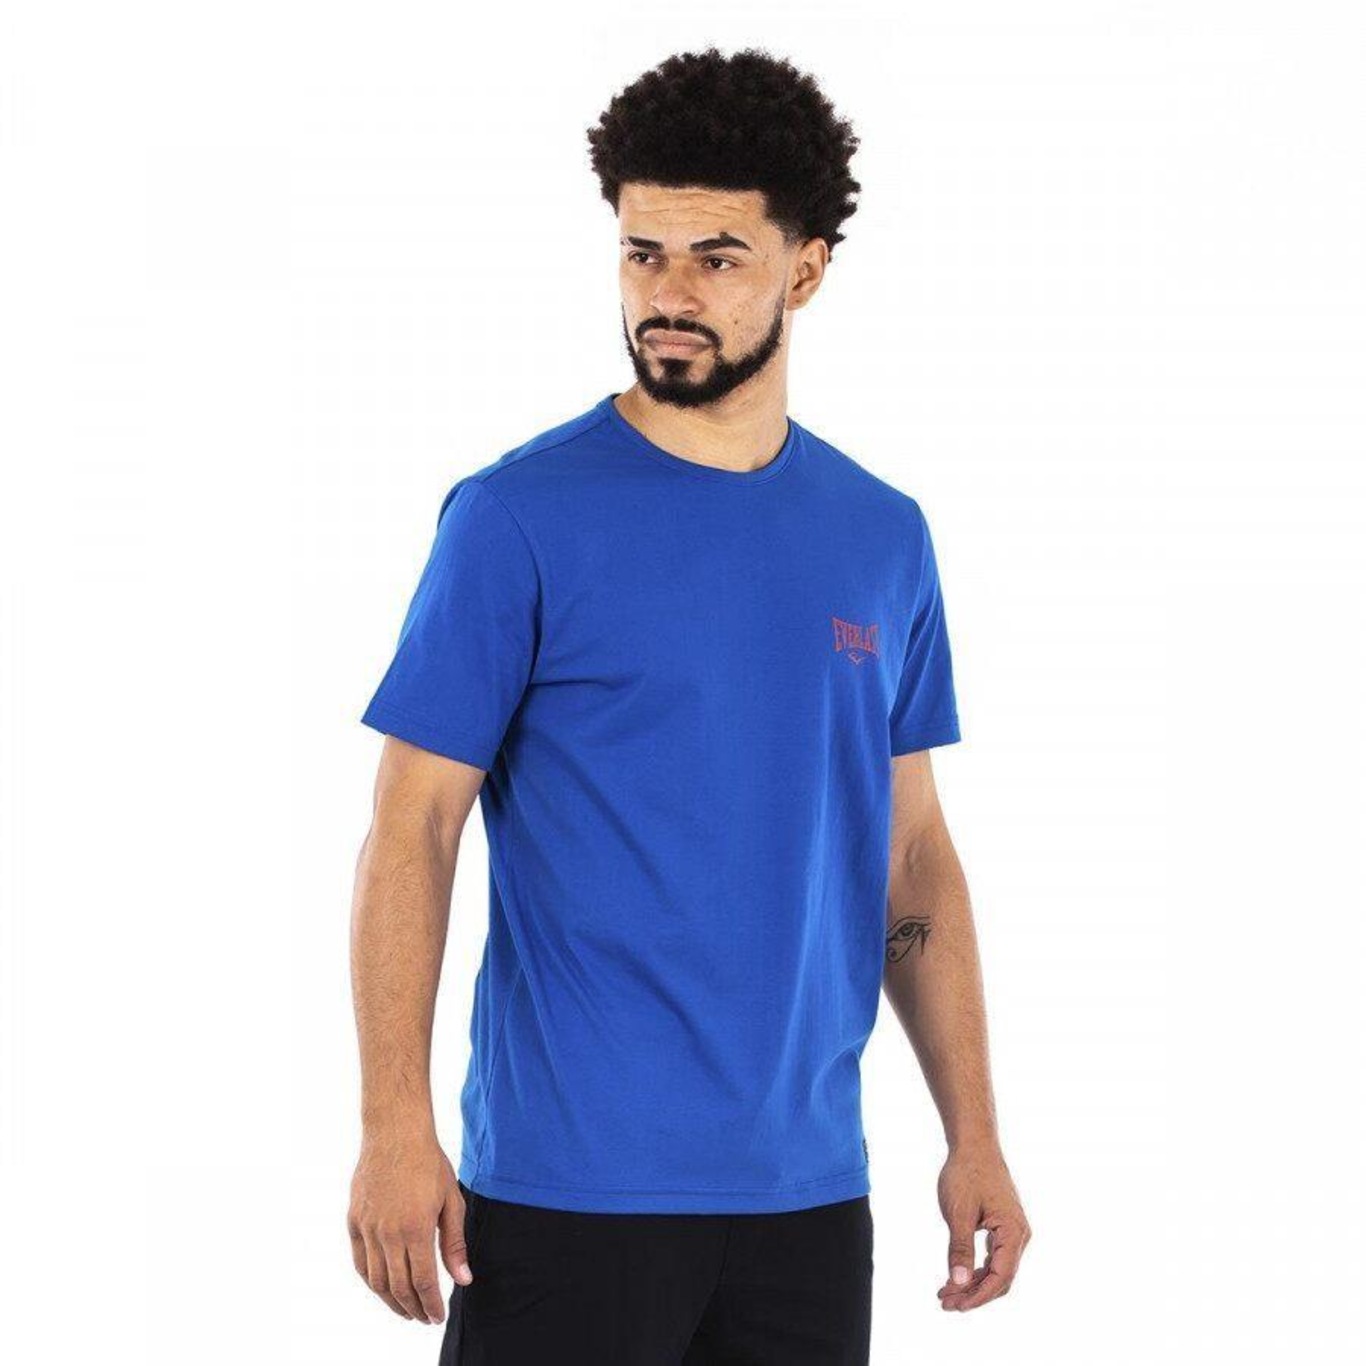 6 cores] Camiseta Everlast Fundamentals - Masculina em Promoção no